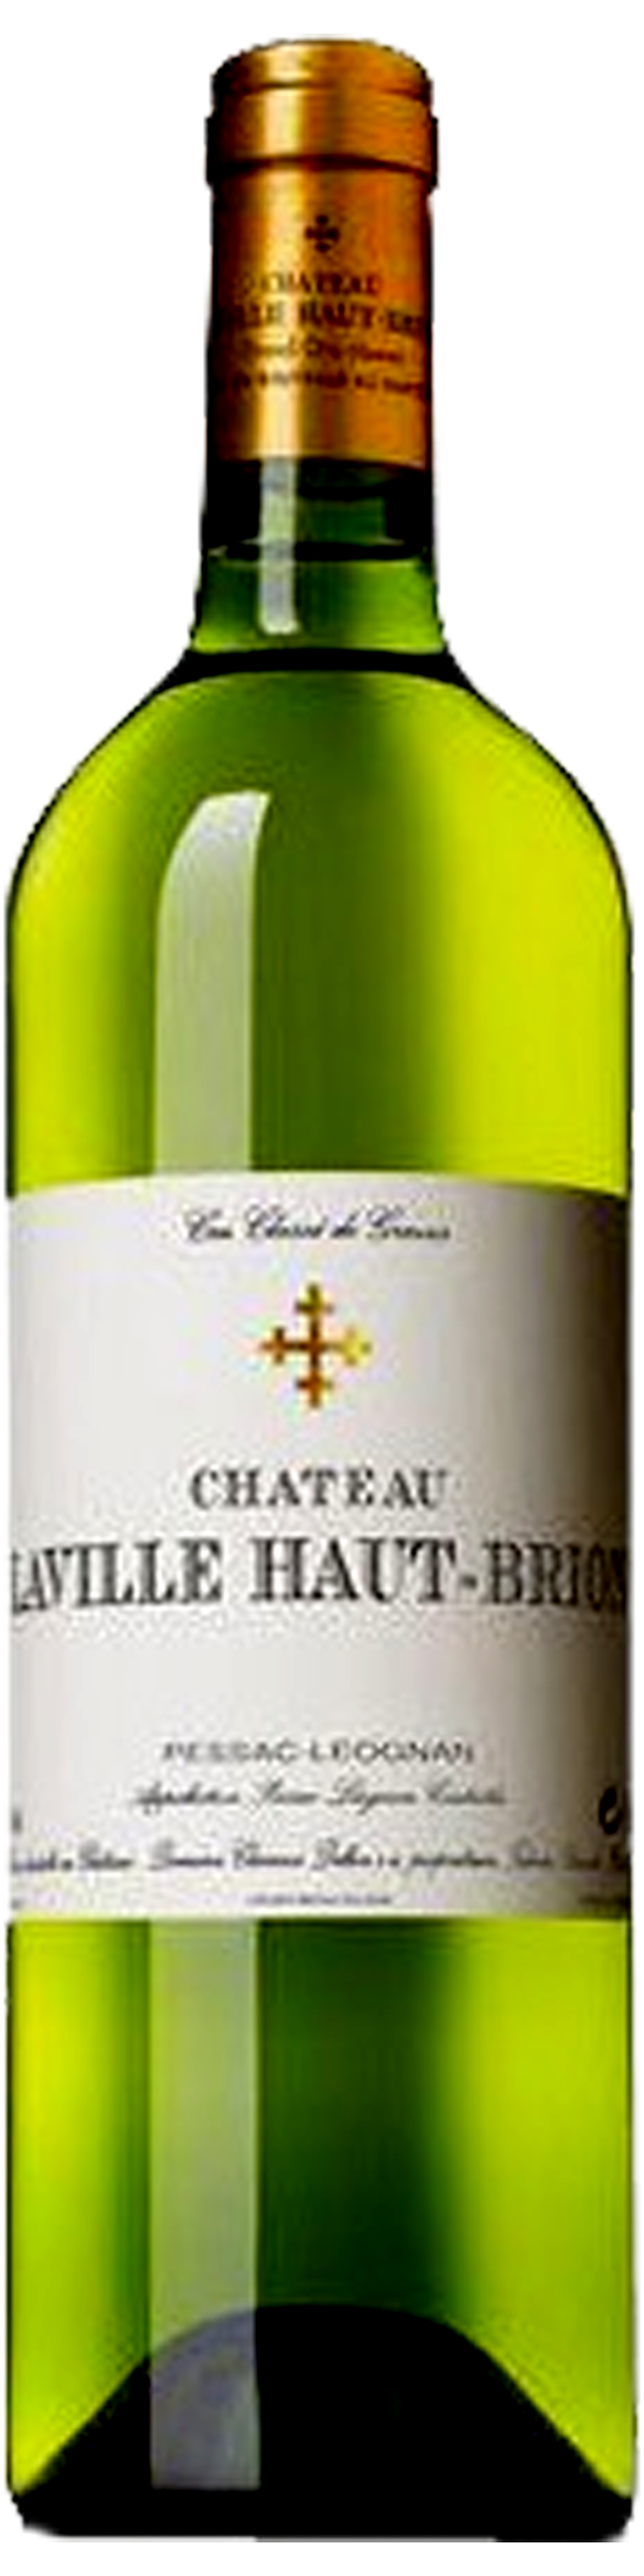 Bottle shot of 2008 Château Laville Haut Brion Blanc, Cr Classé Graves